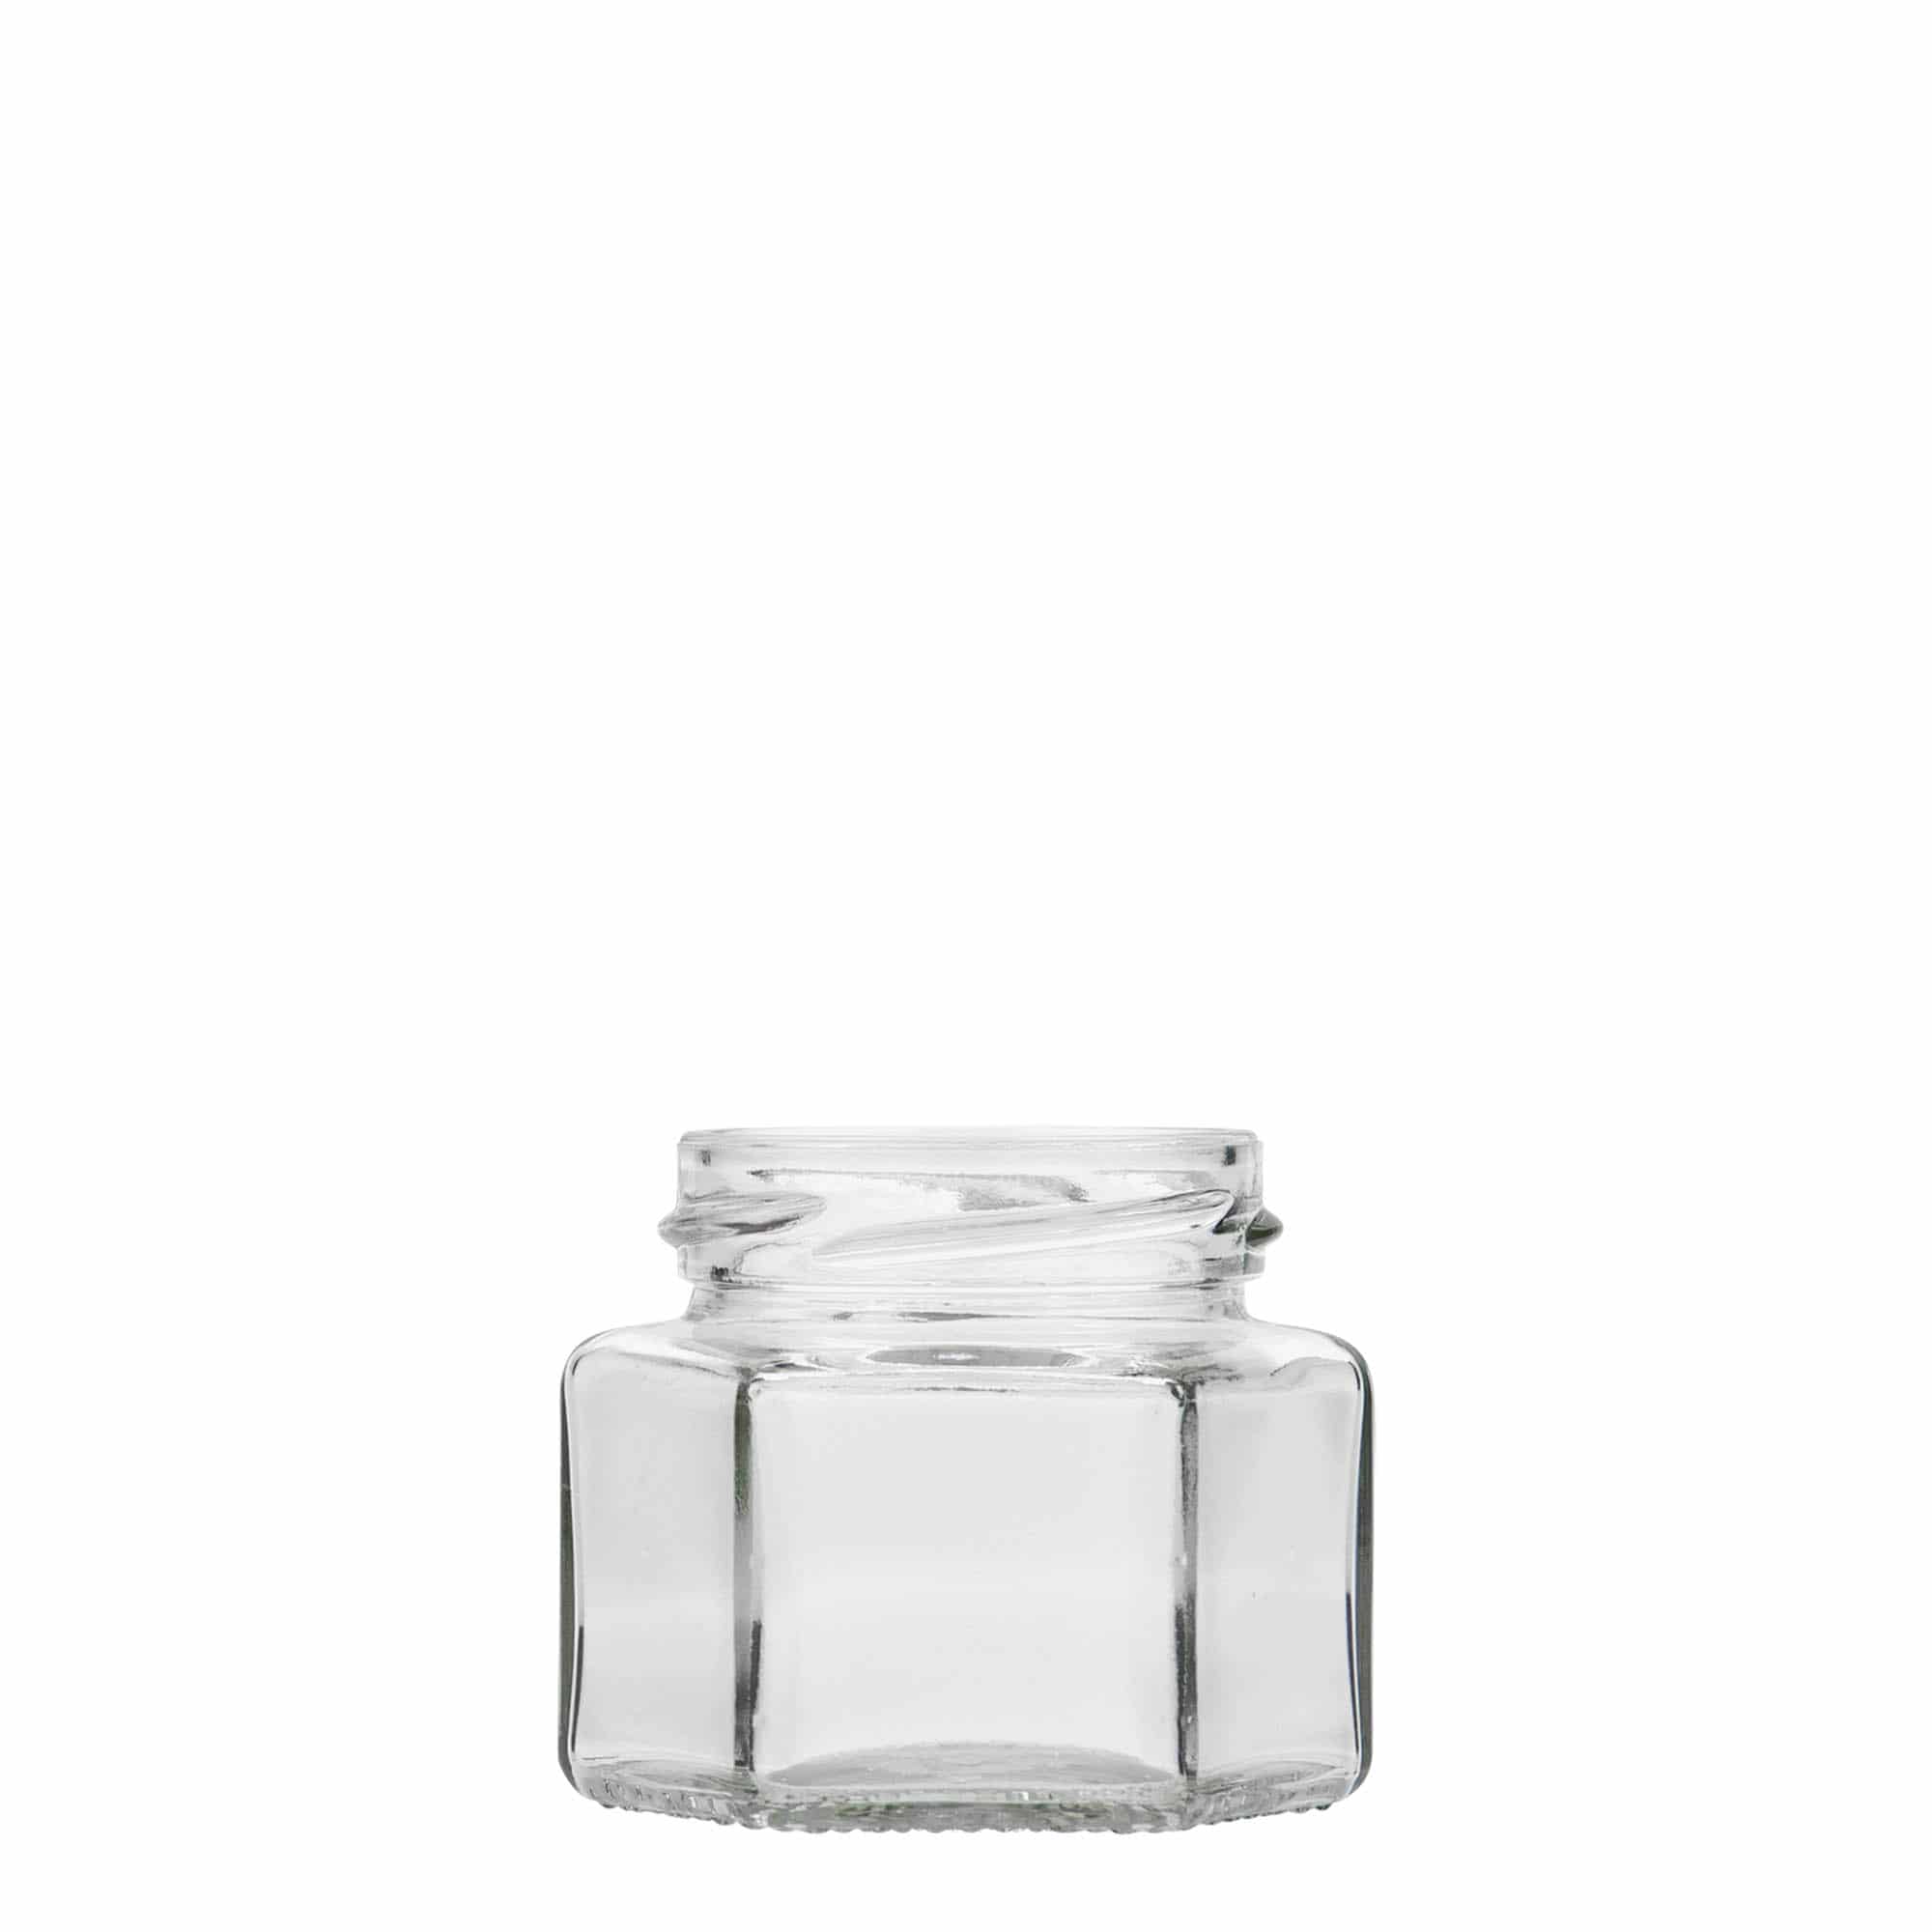 Šestiúhelníková sklenice 106 ml, uzávěr: Twist Off (TO 53)